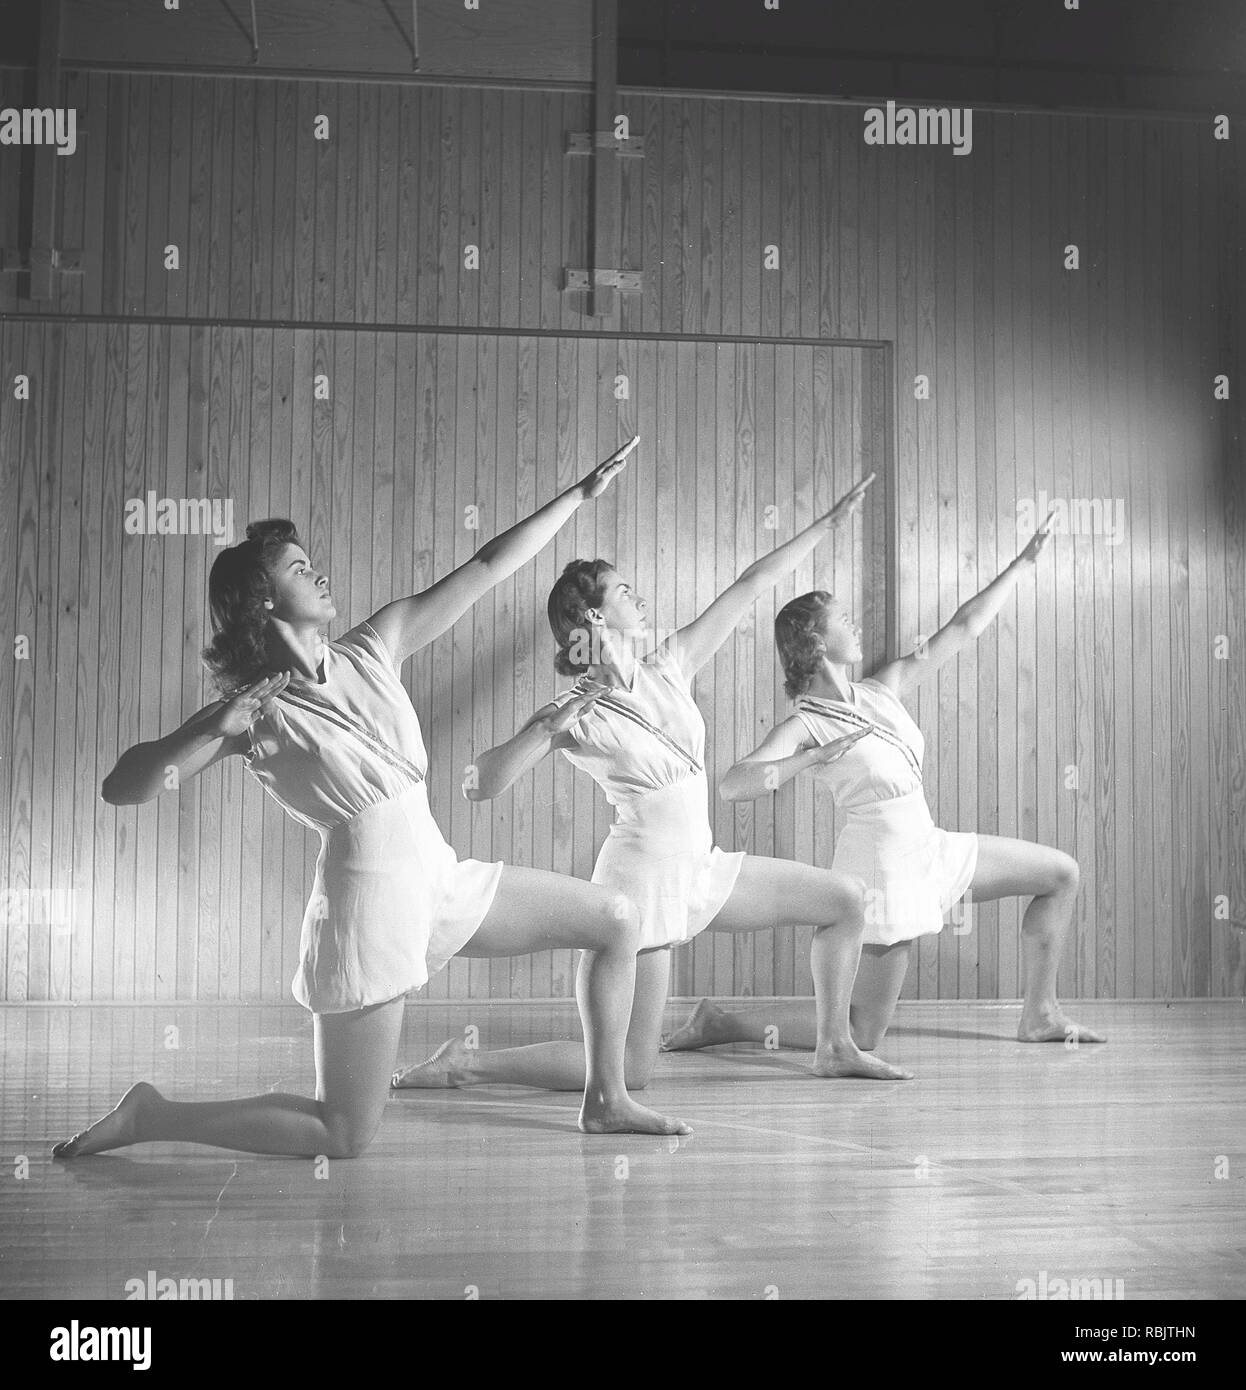 Gymnastik in den 1940er Jahren. Drei jungen weiblichen Turnerinnen sind zusammen zu praktizieren und tut das gleiche Bewegung. 1940 s Schweden Foto Kristoffersson ref M 107-1 Stockfoto